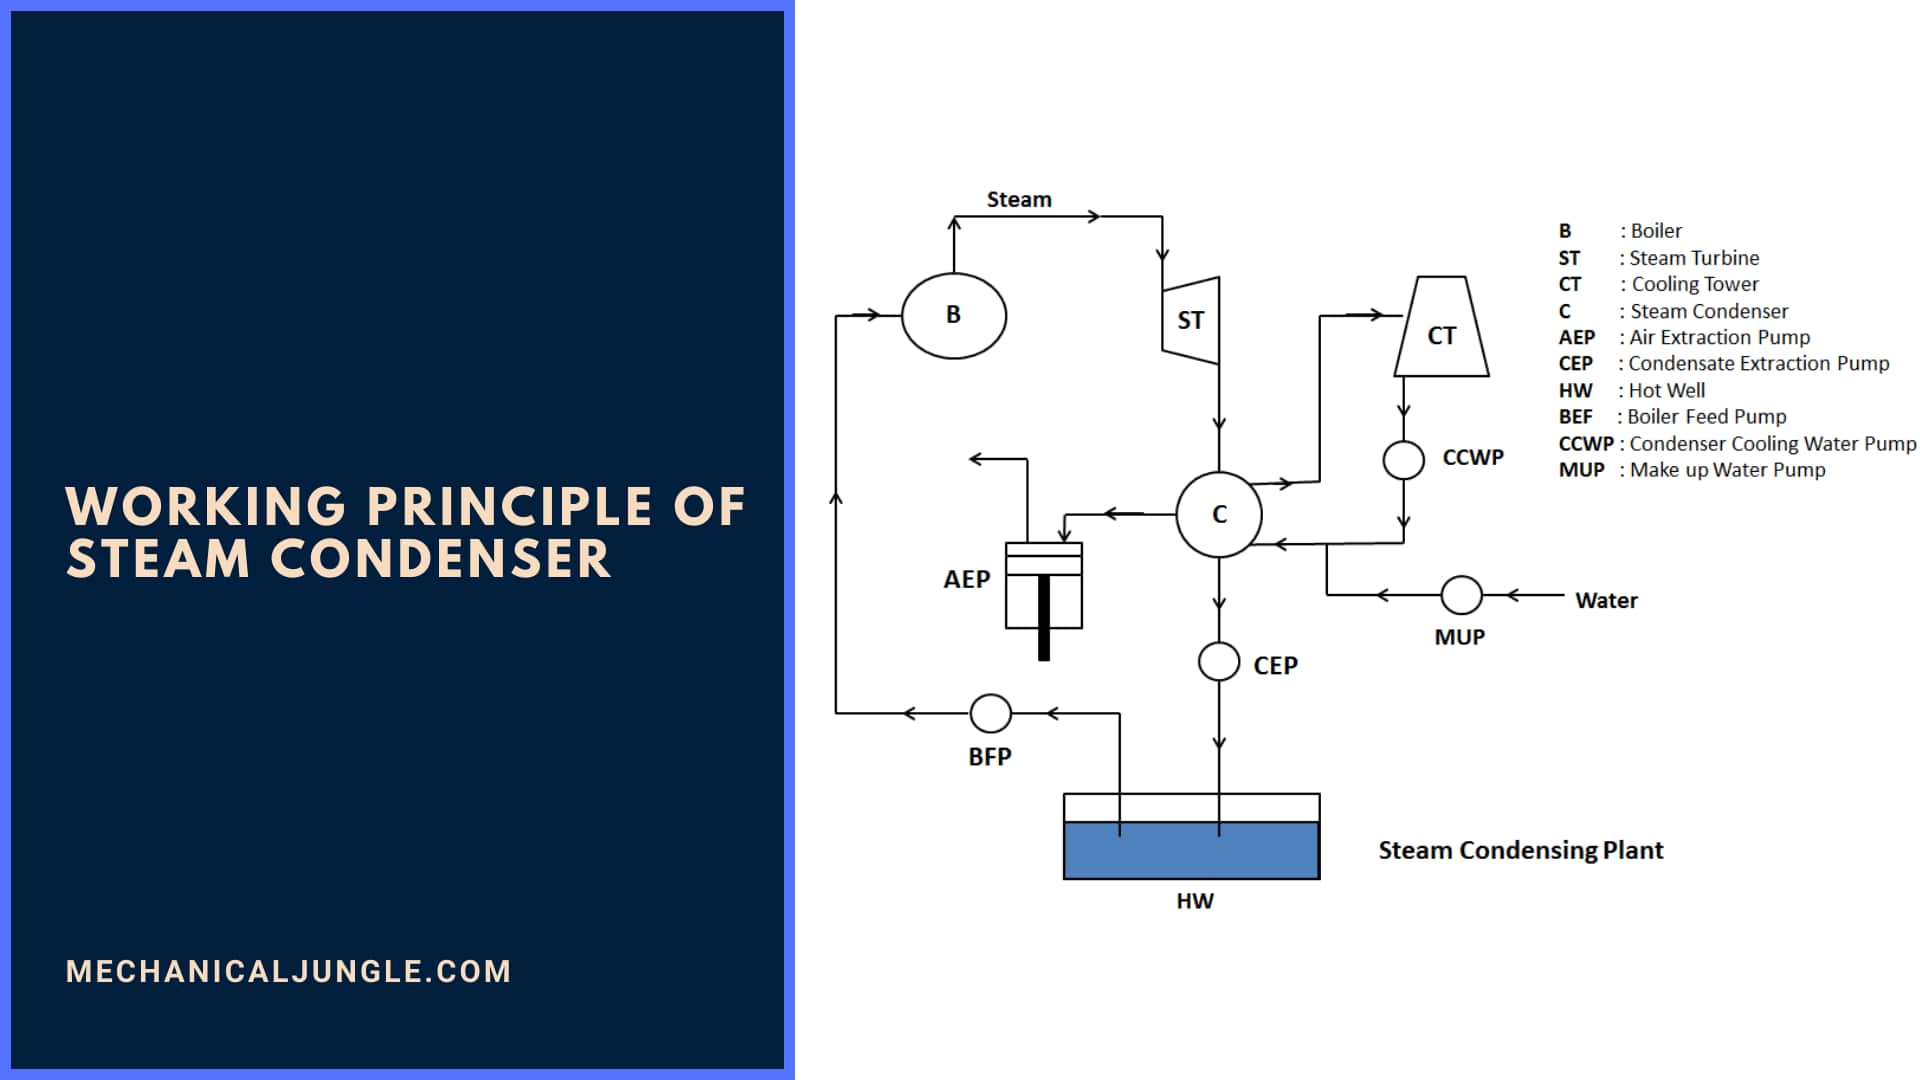 Working Principle of Steam Condenser